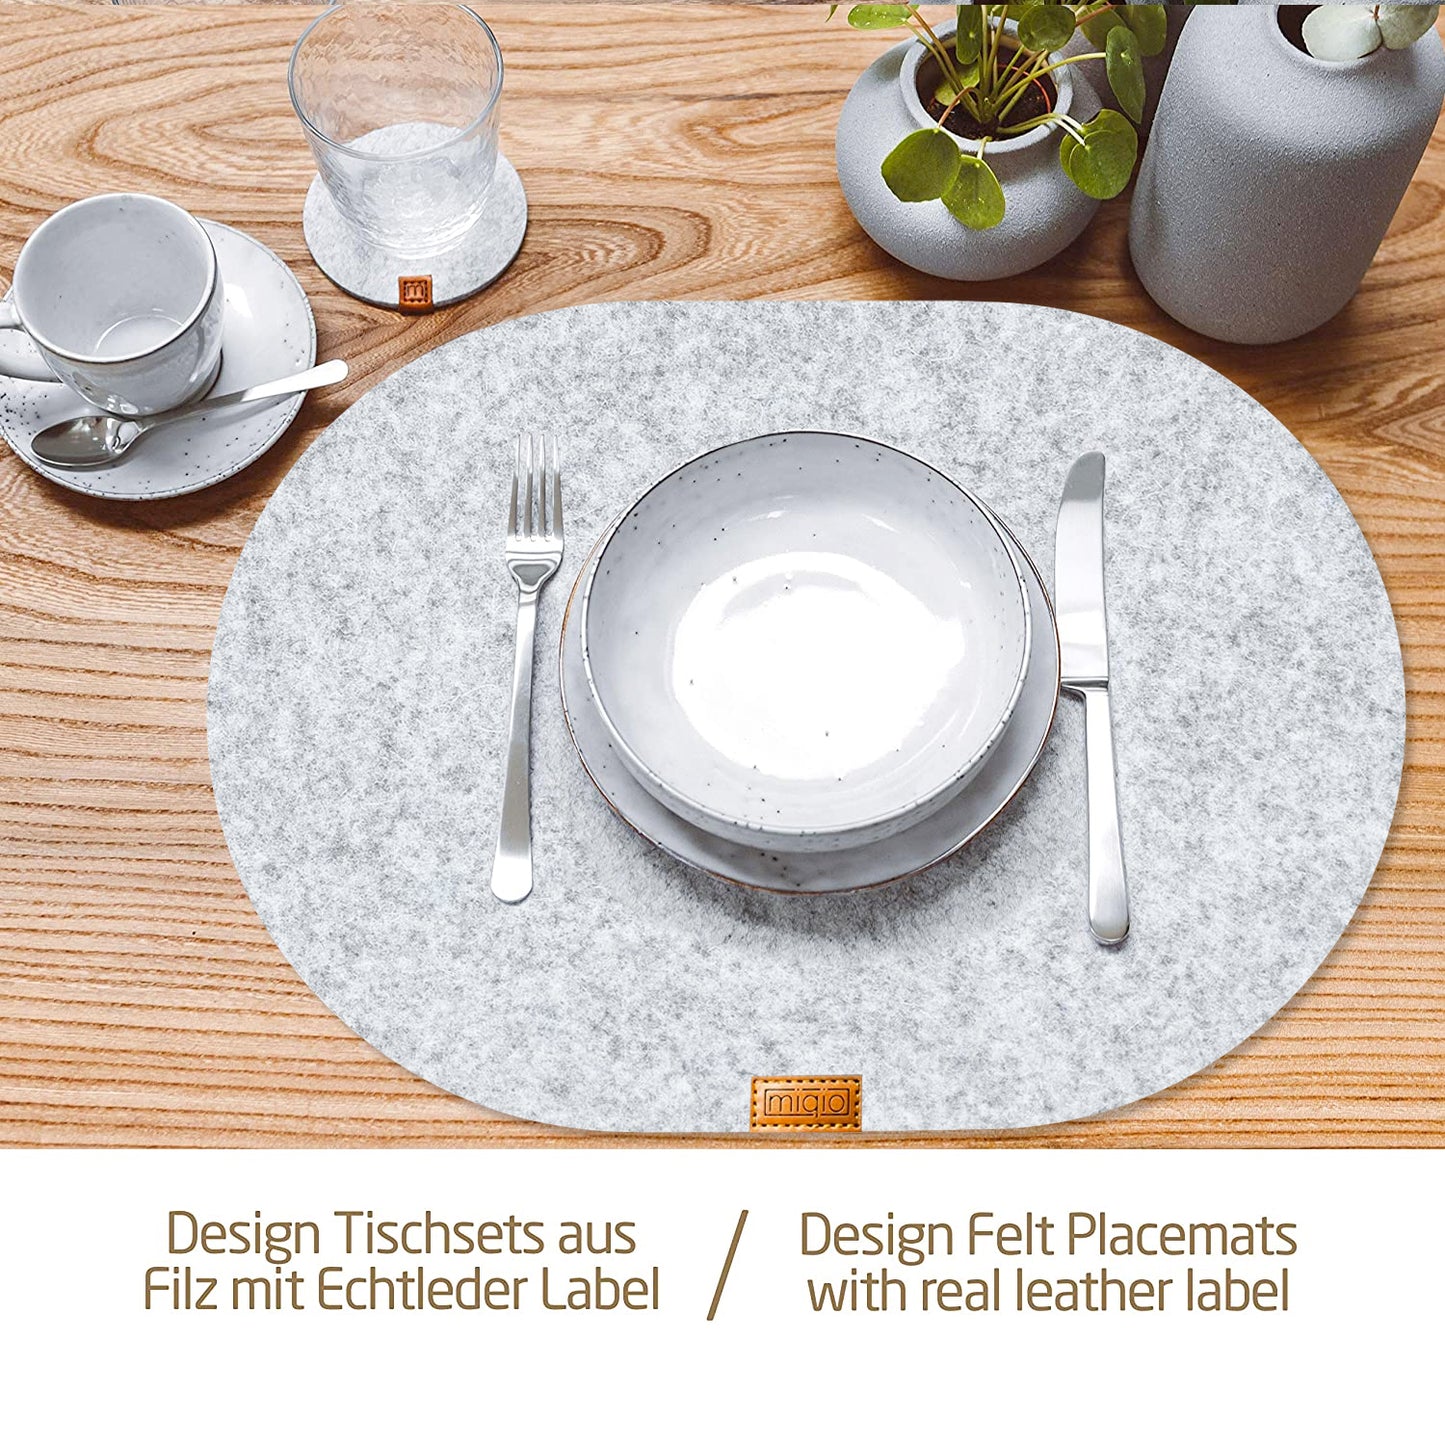 Filz-Tischset inkl. Glasuntersetzer Oval in grau/anthrazit - Set für 6 Personen